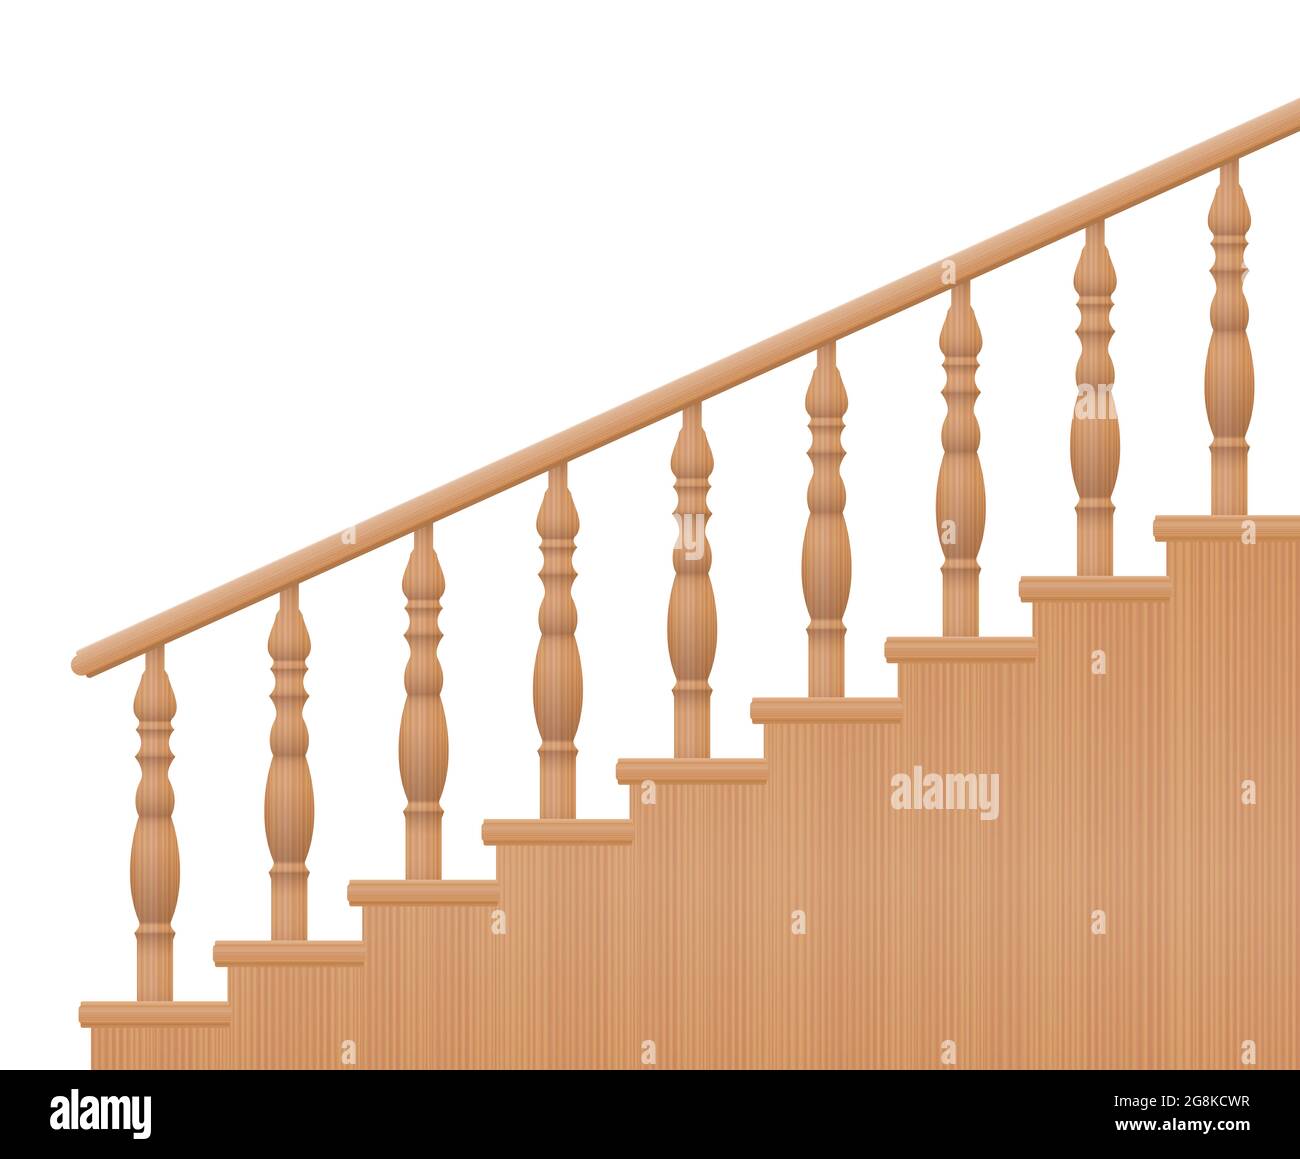 Holzgeländer, gedrehtes Treppengeländer, Seitenansicht - Abbildung auf weißem Hintergrund. Stockfoto